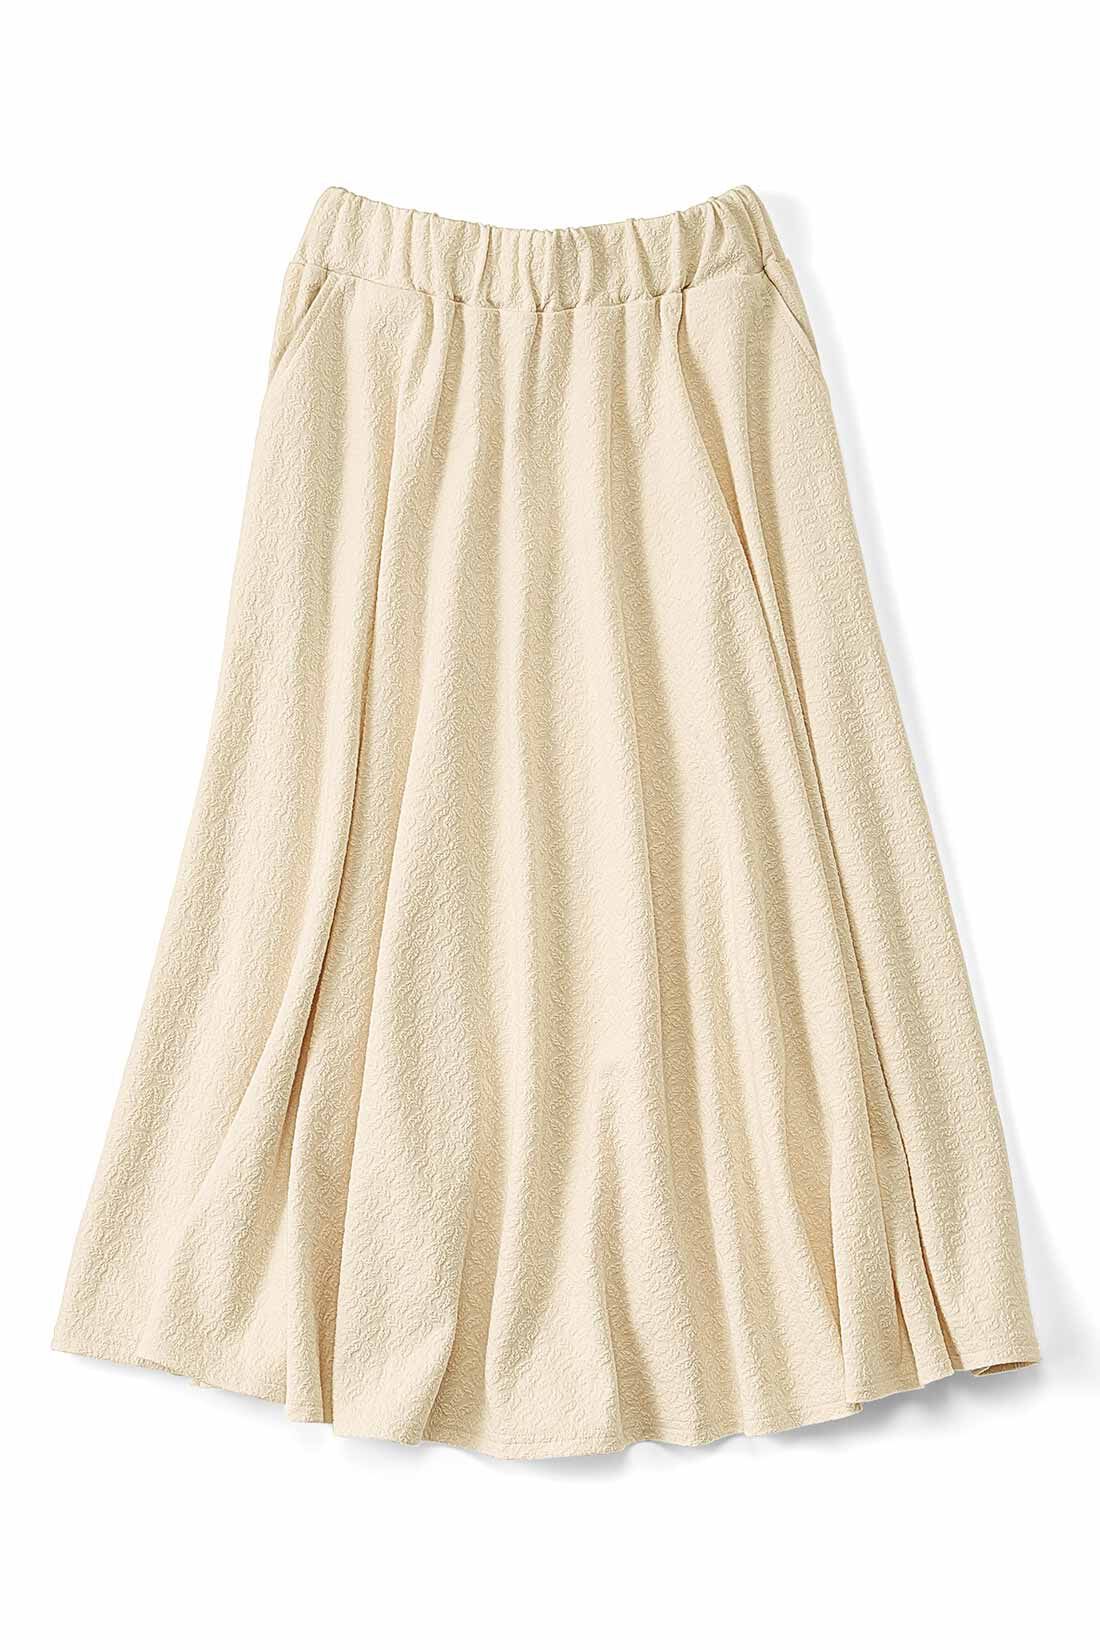 Real Stock|ぽこぽこ柄がかわいい フレアースカート〈バニラ〉|ひざ下丈で、クリーム色が上品。